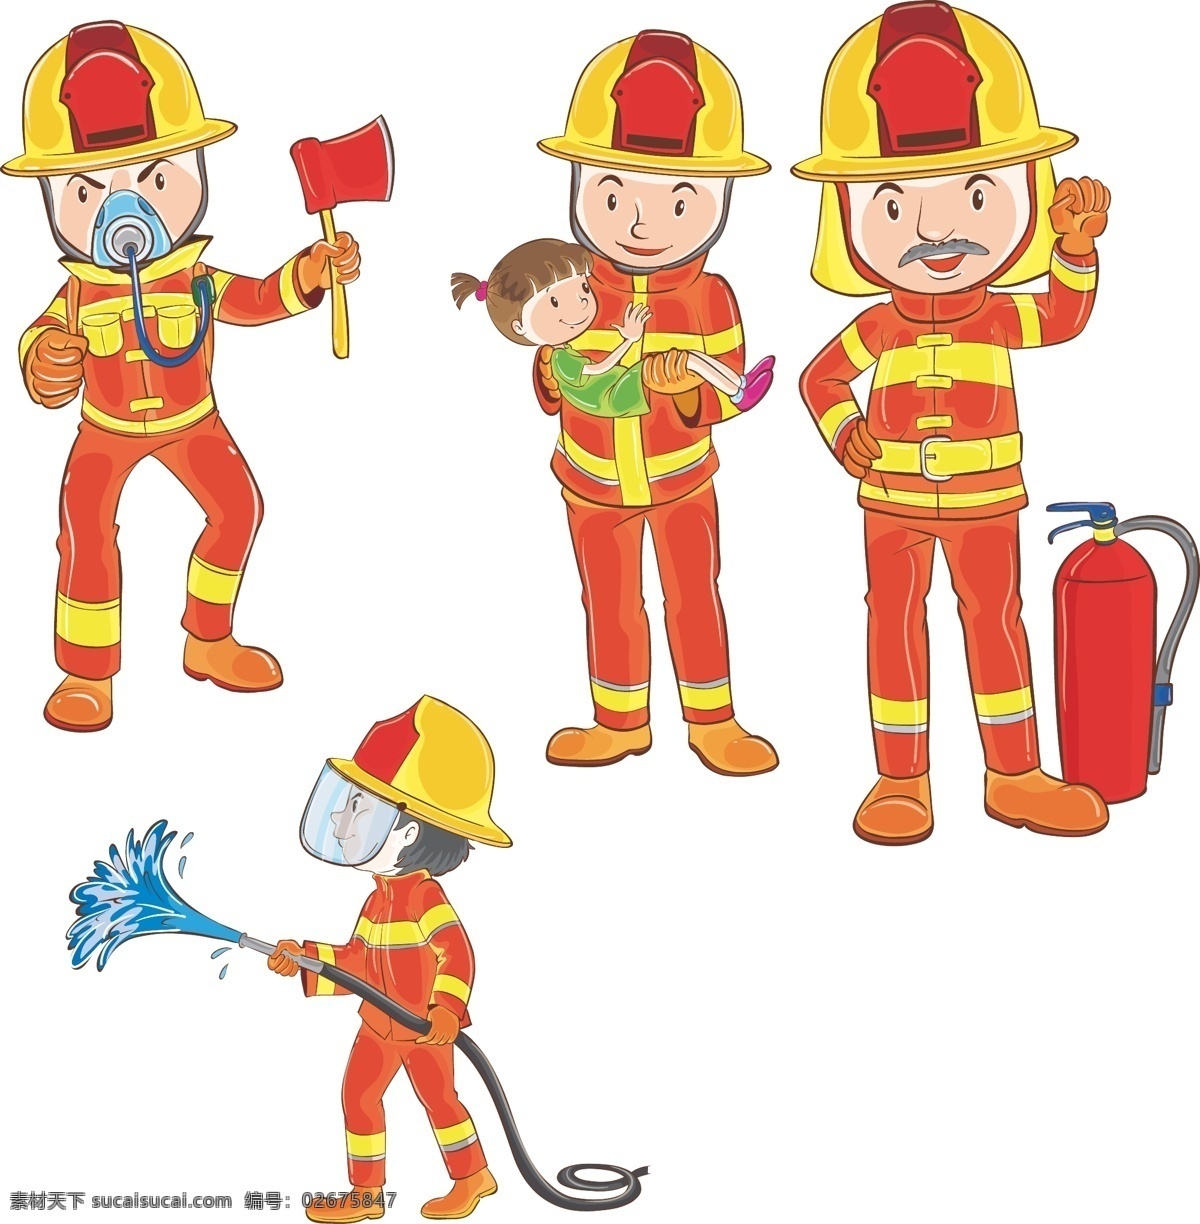 卡通 消防员 卡通消防员 可爱消防员 小小消防员 灭火器 斧头 喷水枪 共享素材